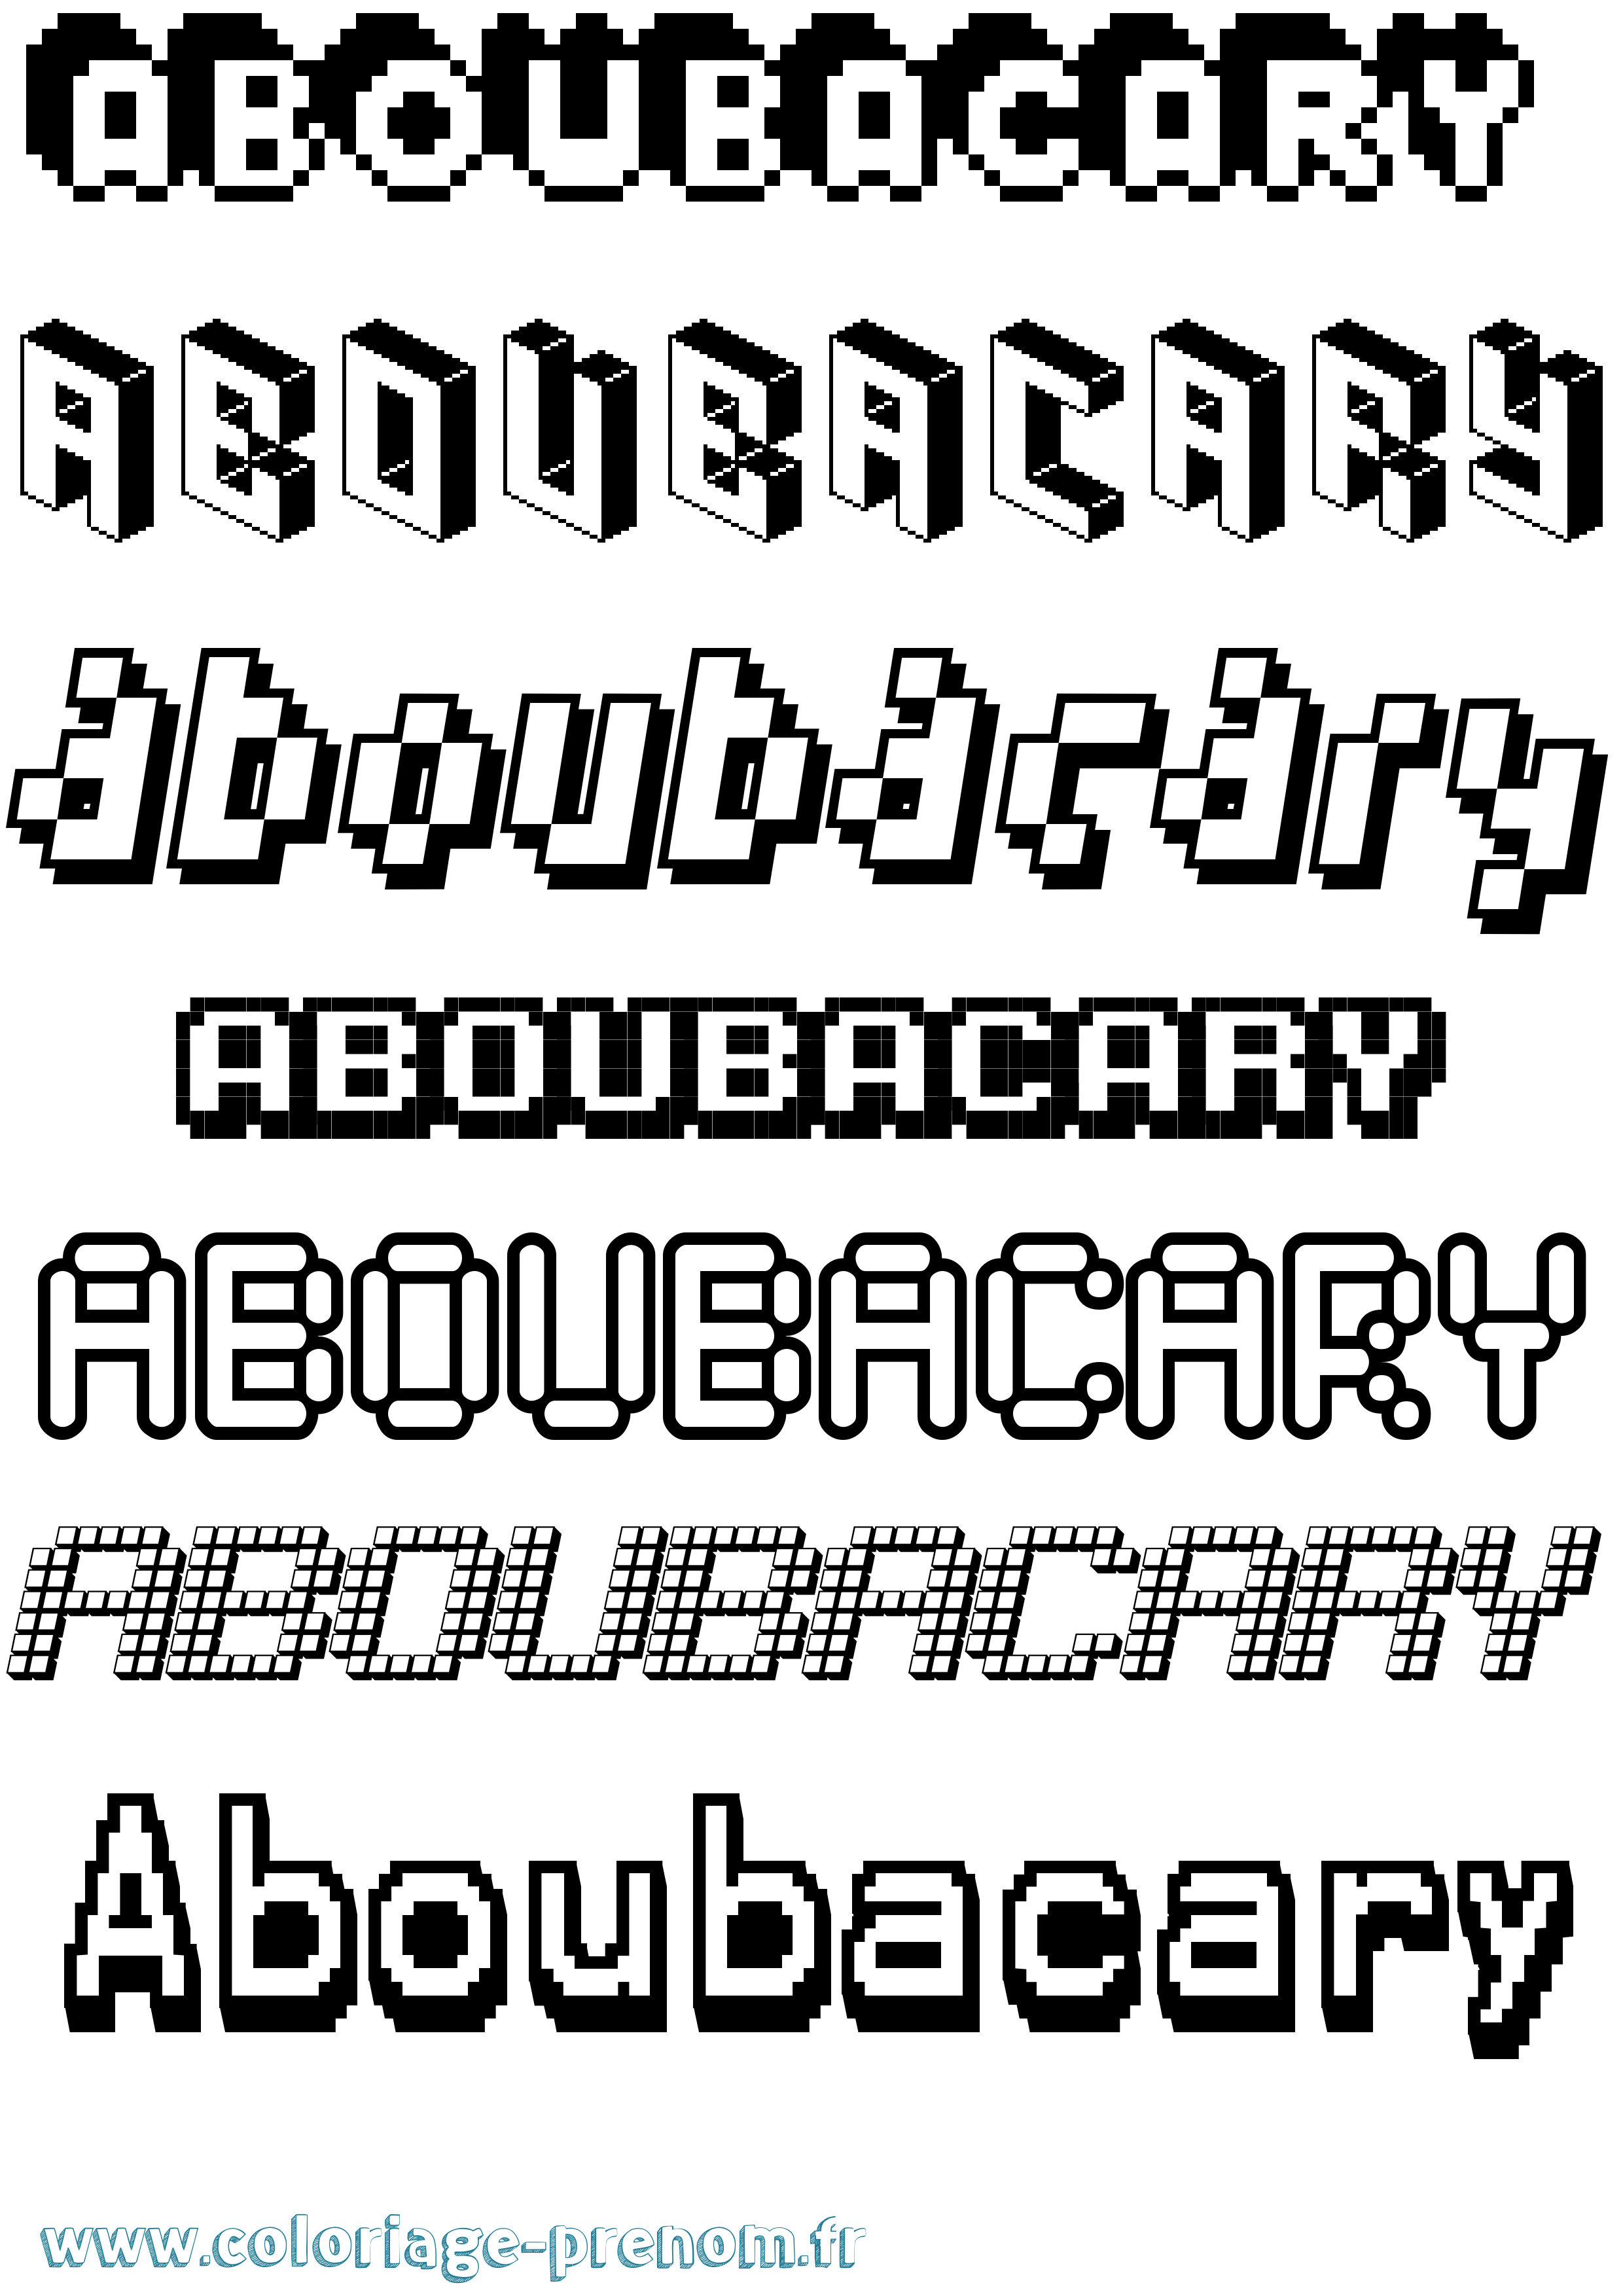 Coloriage prénom Aboubacary Pixel